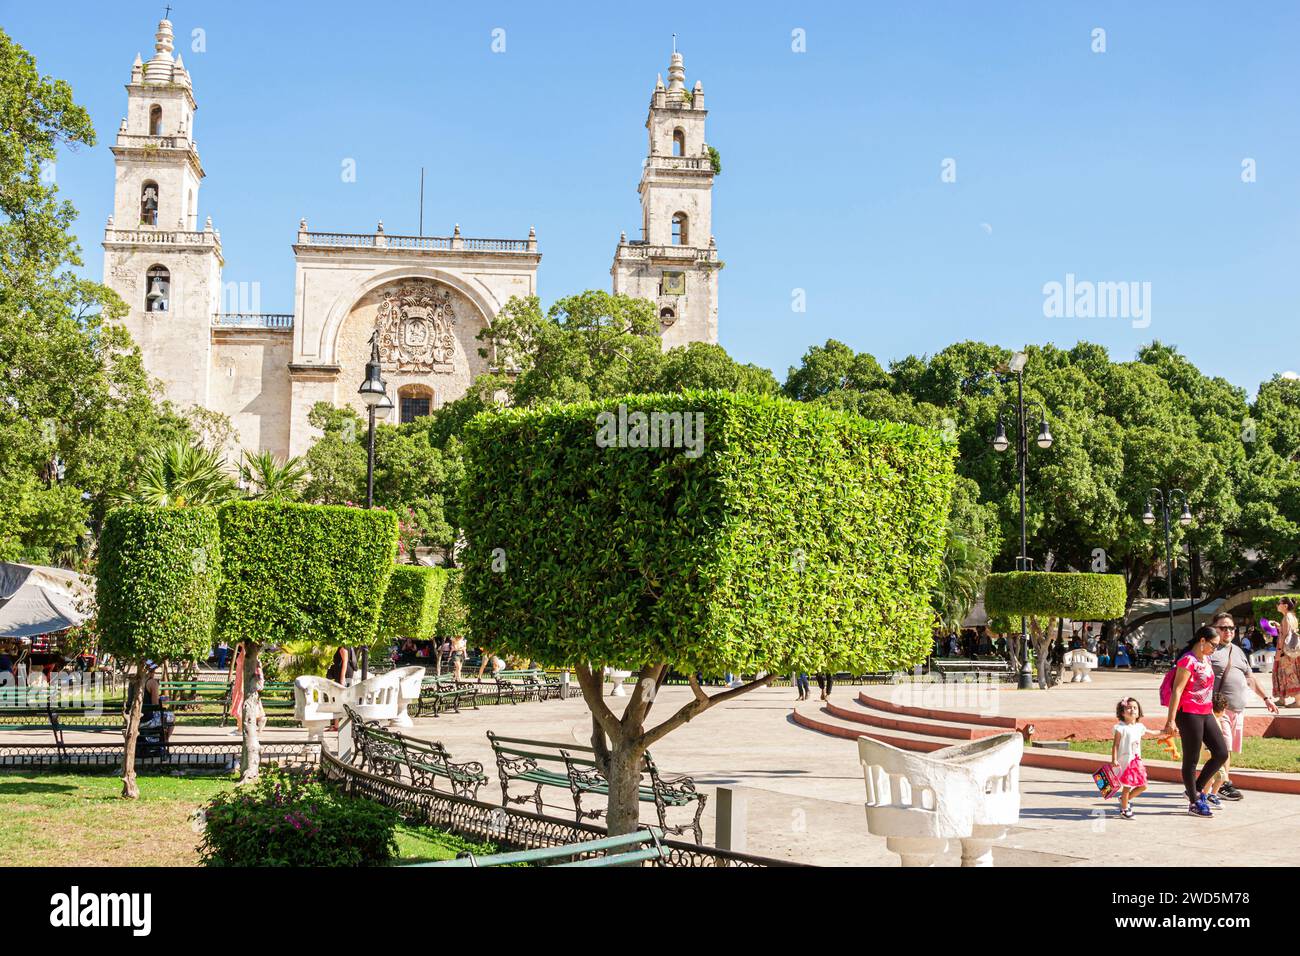 Merida Mexico, zentrales historisches Zentrum, öffentlicher Park Plaza Grande, Kathedrale von Merida San Ildefonso, Außenfassade, Gebäude Stockfoto